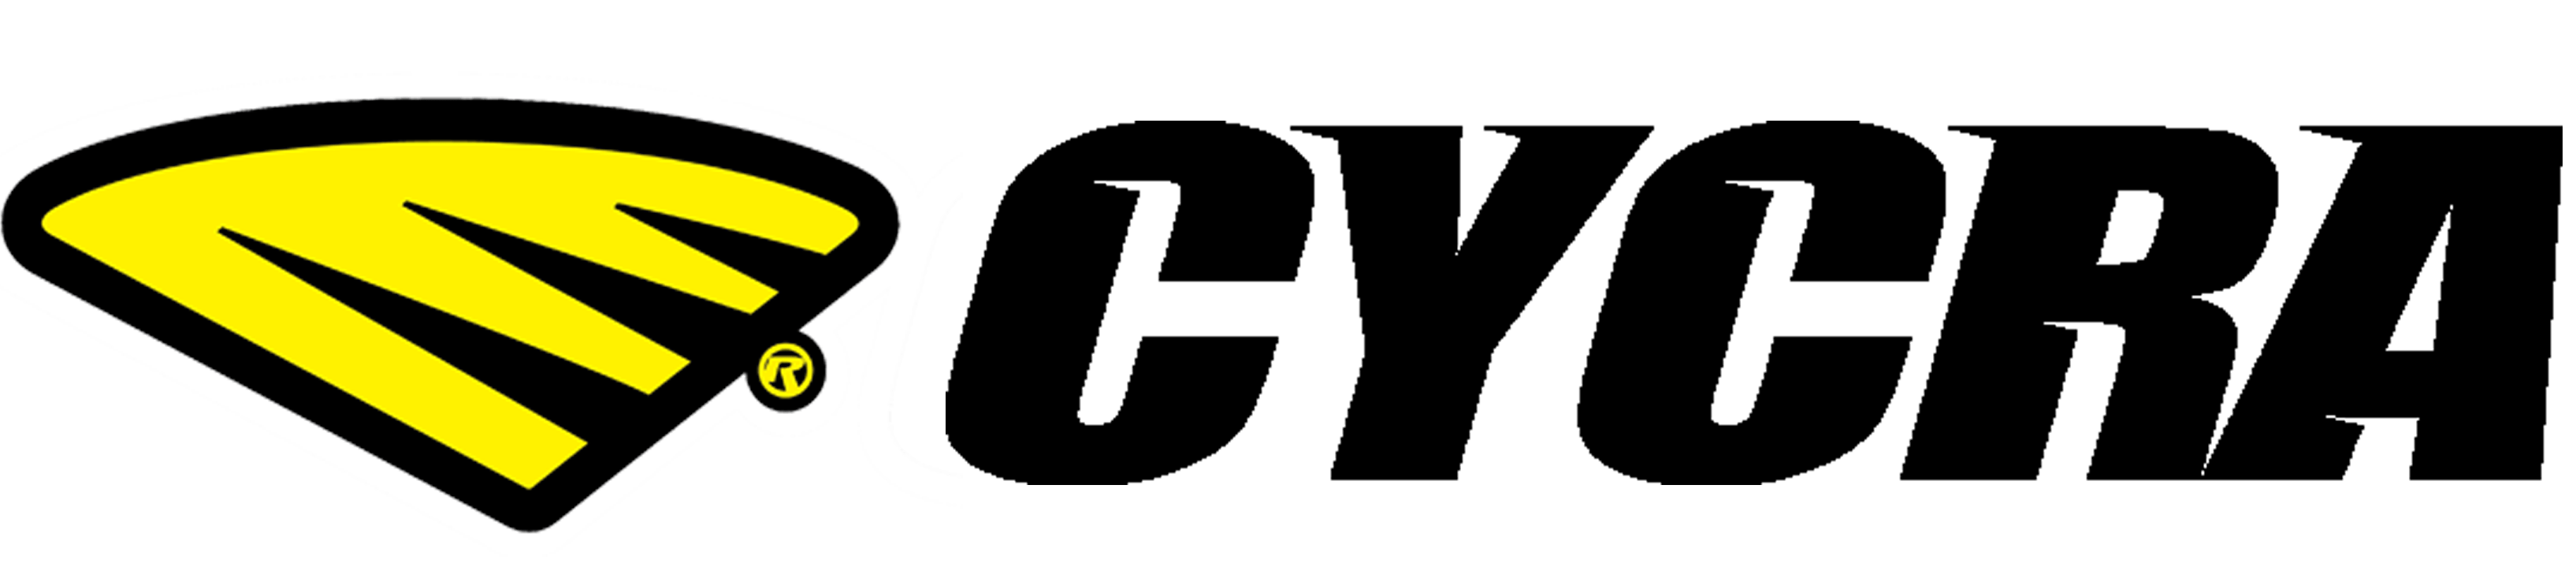 Cycra Logo - Cycra Motocross